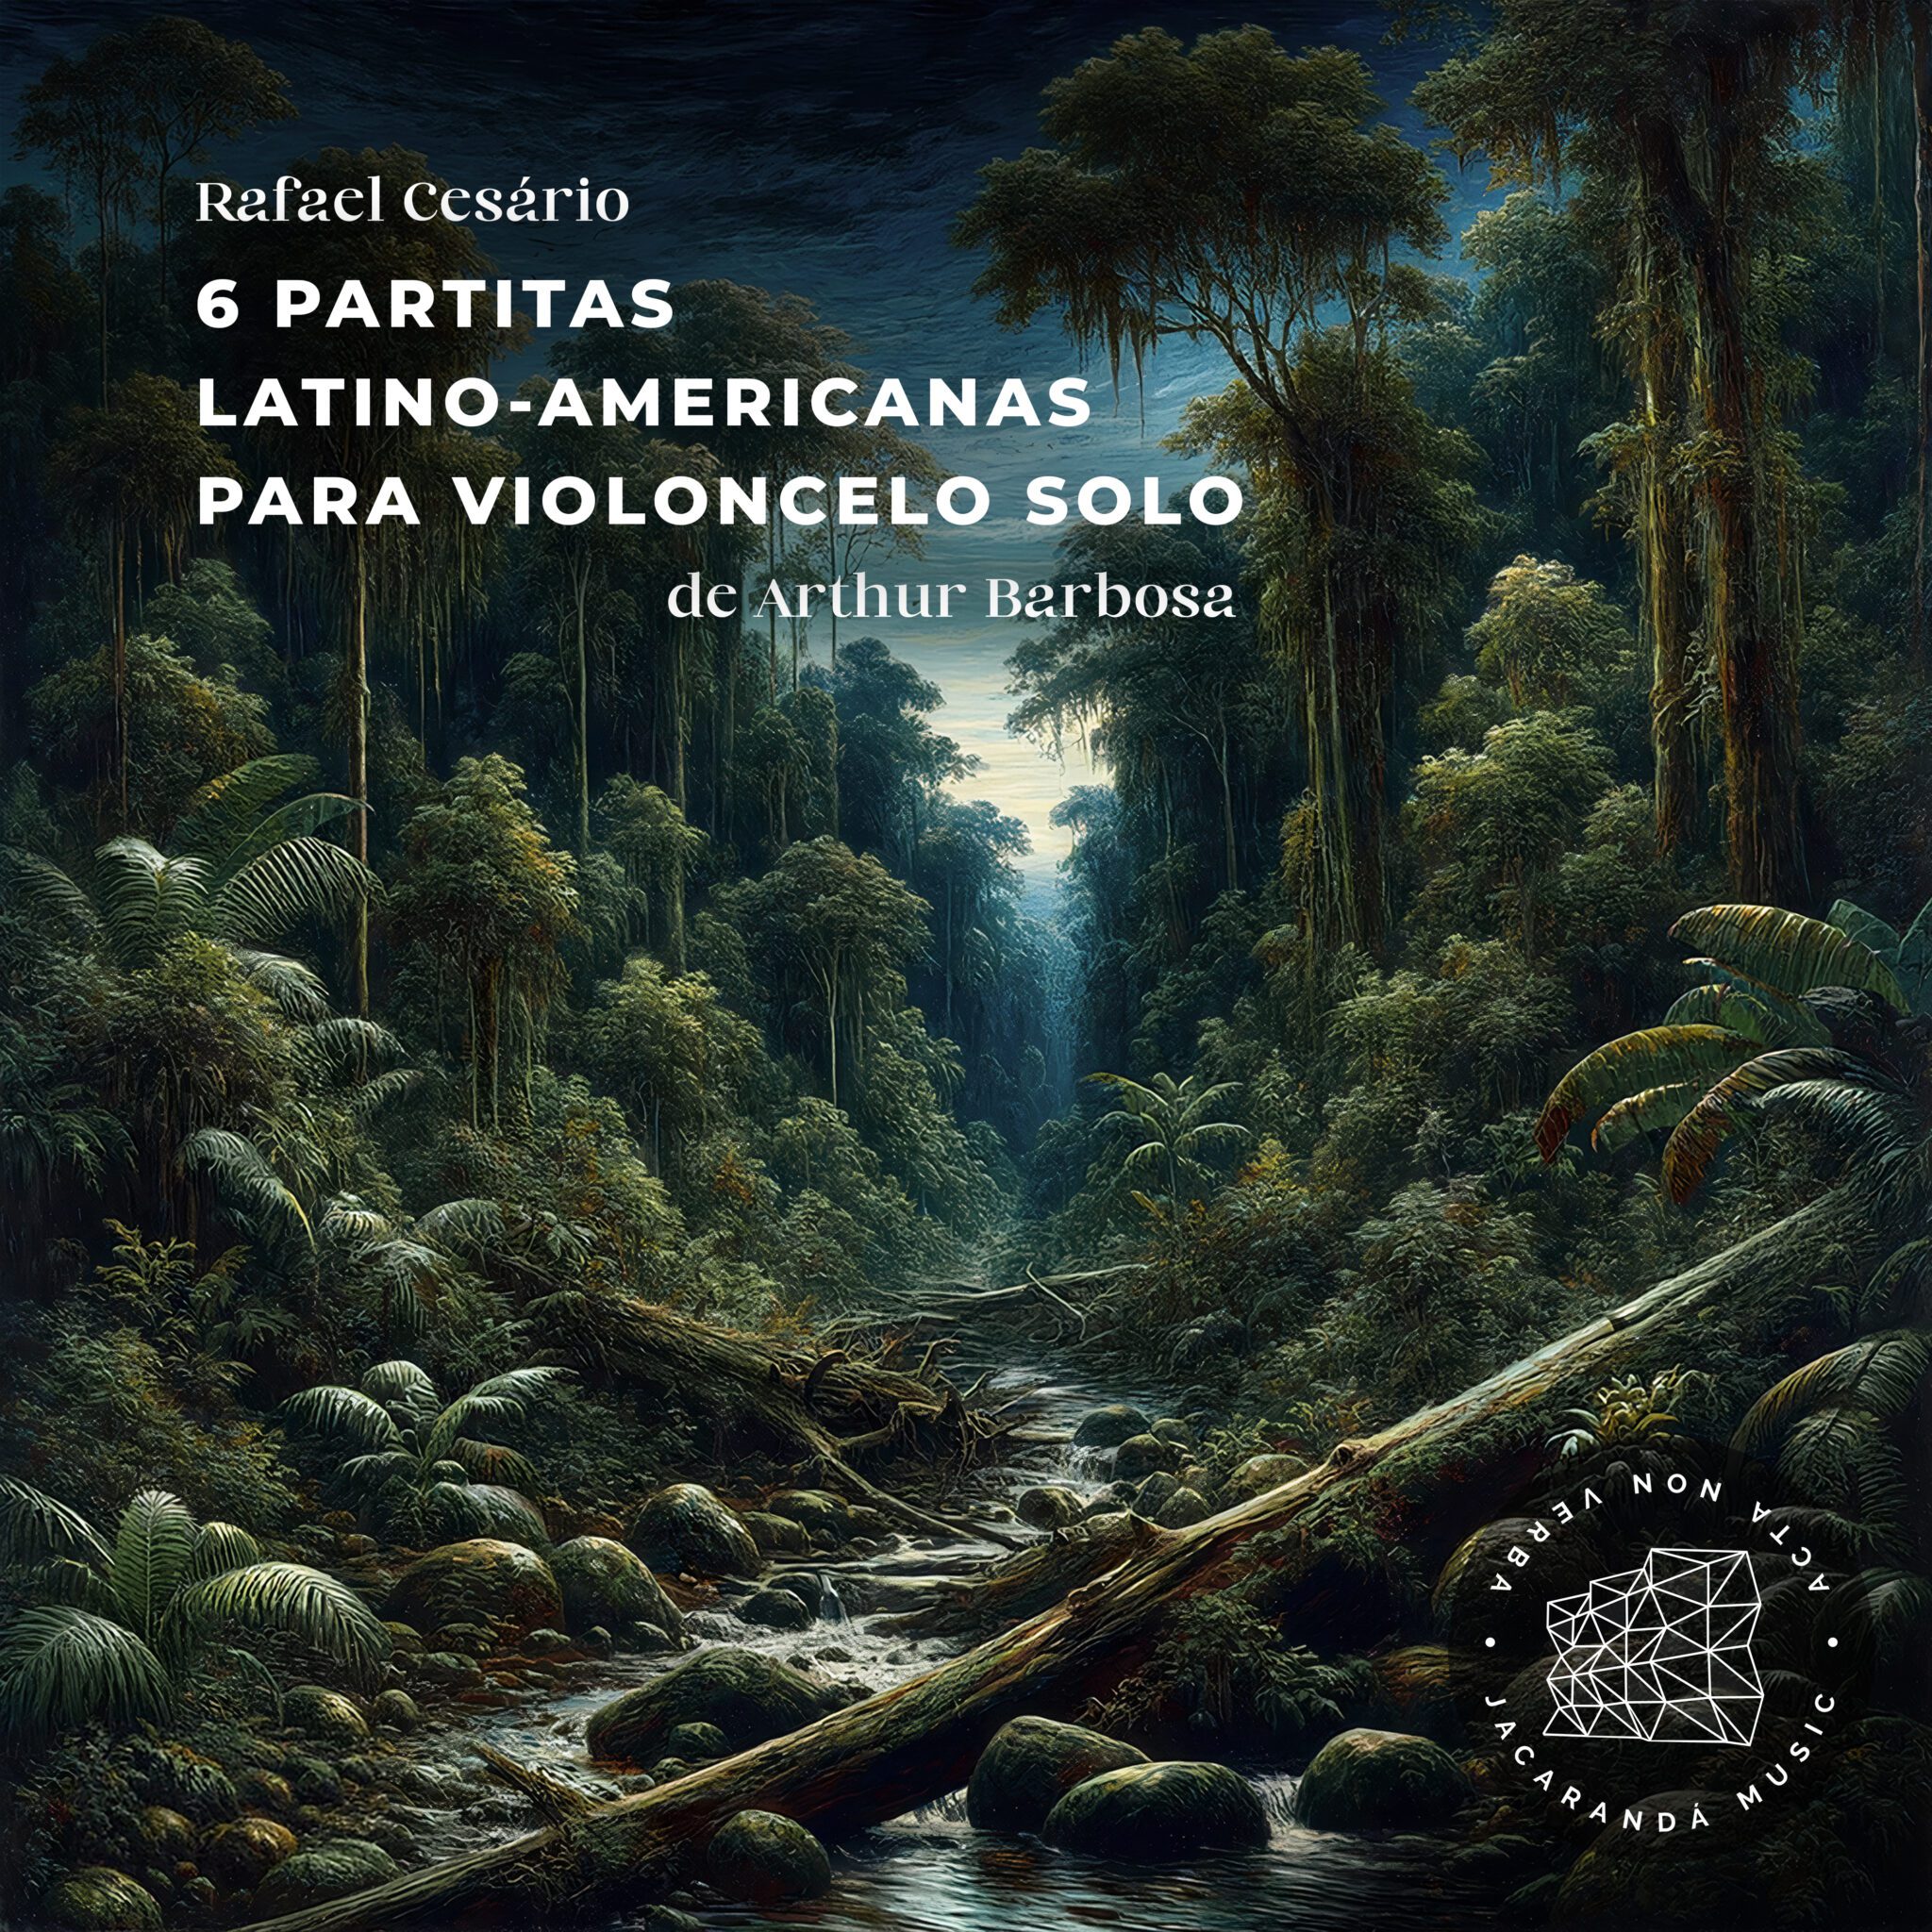 CAPA - 6 Partitas Latino Americanas - Rafael Cesario - Arthur Barbosa - Jacaranda Music - Julian J. Ludwig